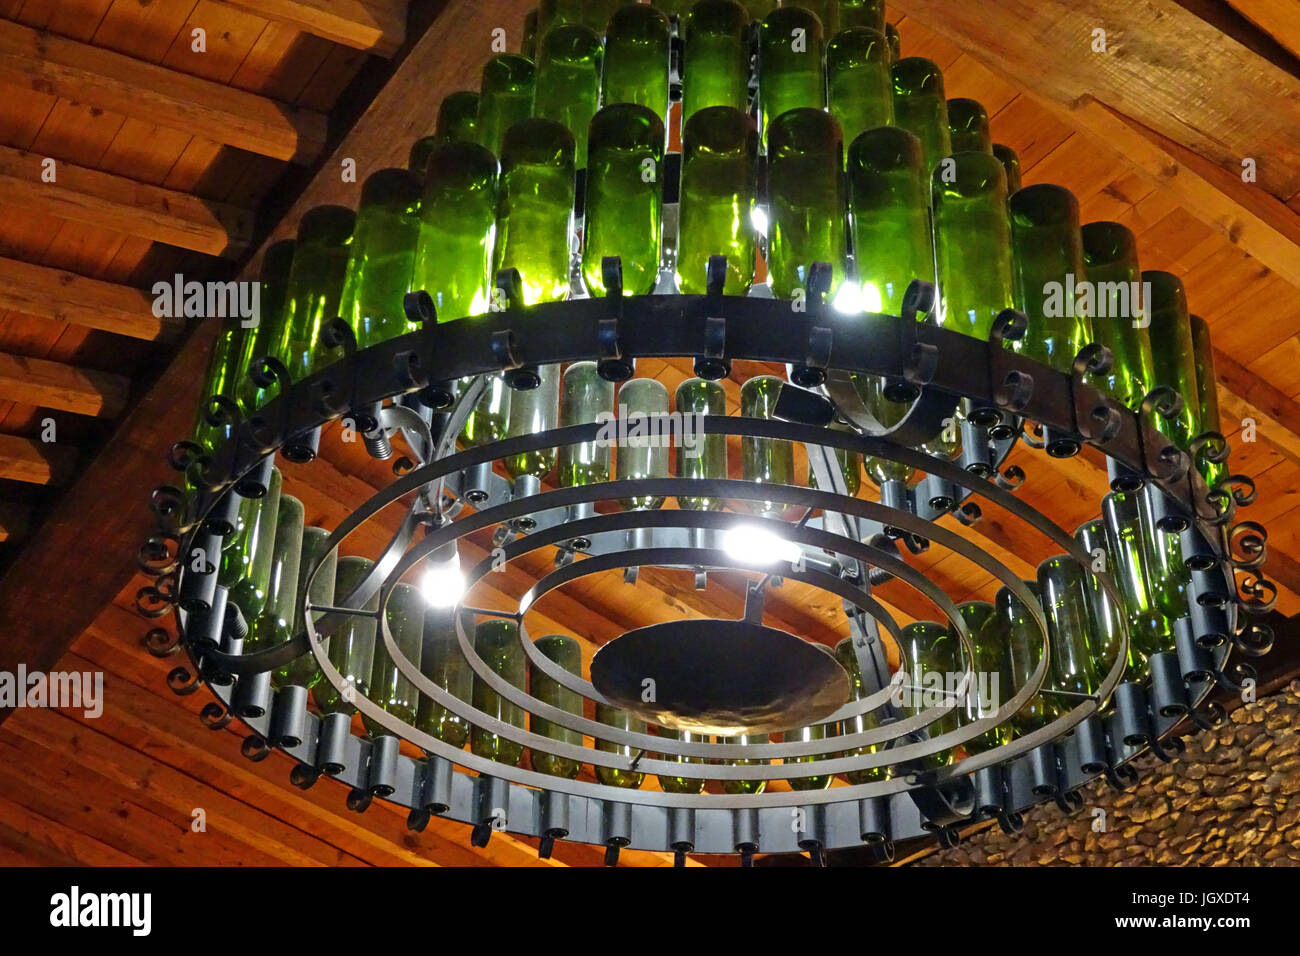 Kronleuchter aus Weinflaschen in der Bodega Rubicon, Weinproben und  Weinverkauf, La Geria, Lanzarote, Kanarische Inseln, Europa | Kronleuchter  aus w Stockfotografie - Alamy